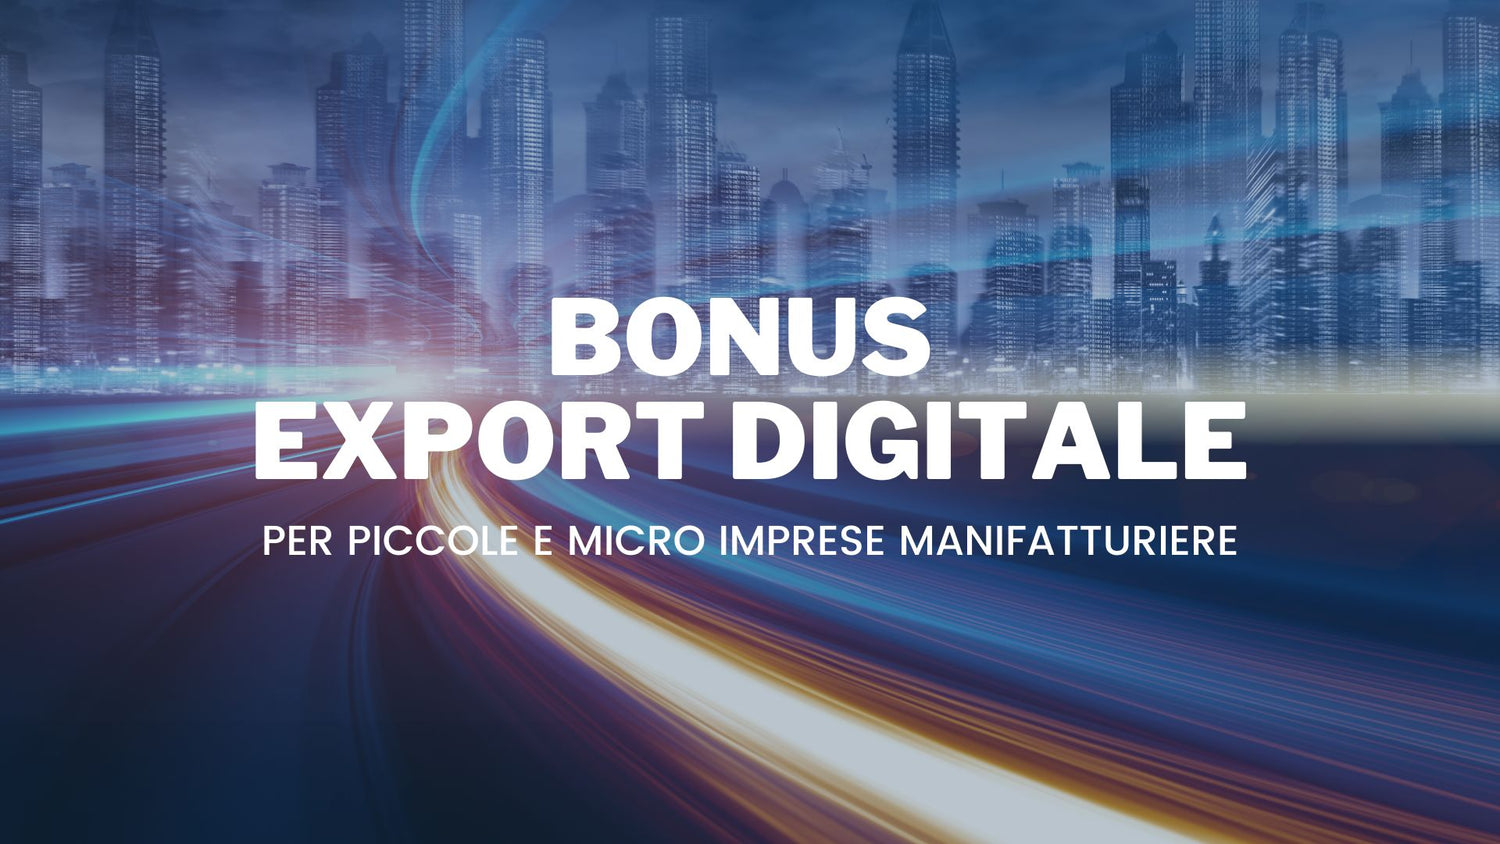 Bonus Export Digitale per piccole e micro imprese manifatturiere